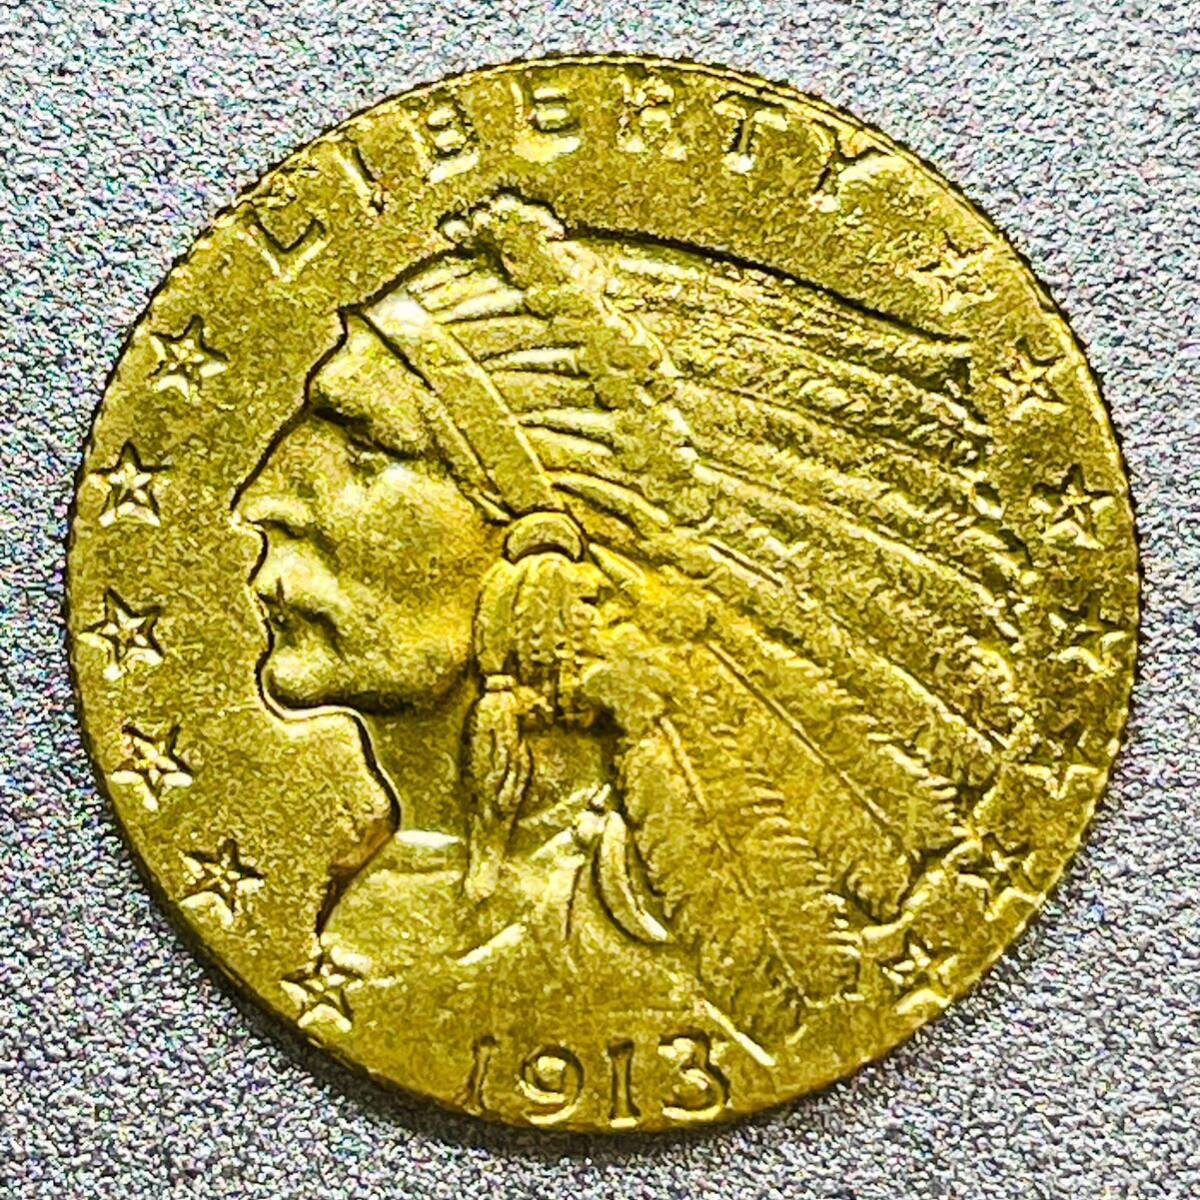 インディアンヘッド 2.5ドル金貨 1913年 レプリカコインの画像1